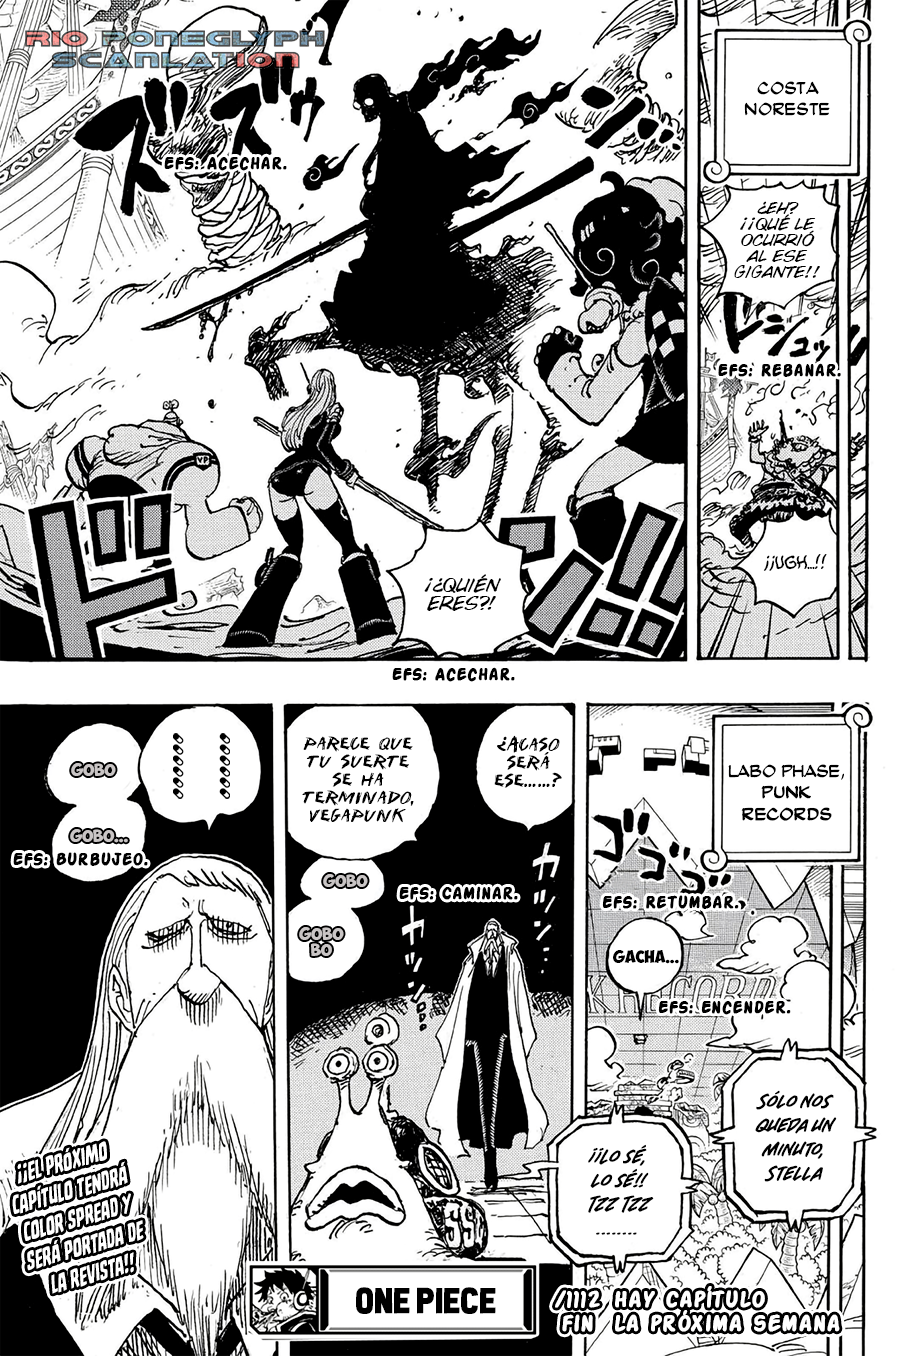 español - One Piece Manga 1112 [Español] [Rio Poneglyph Scans] 14-2